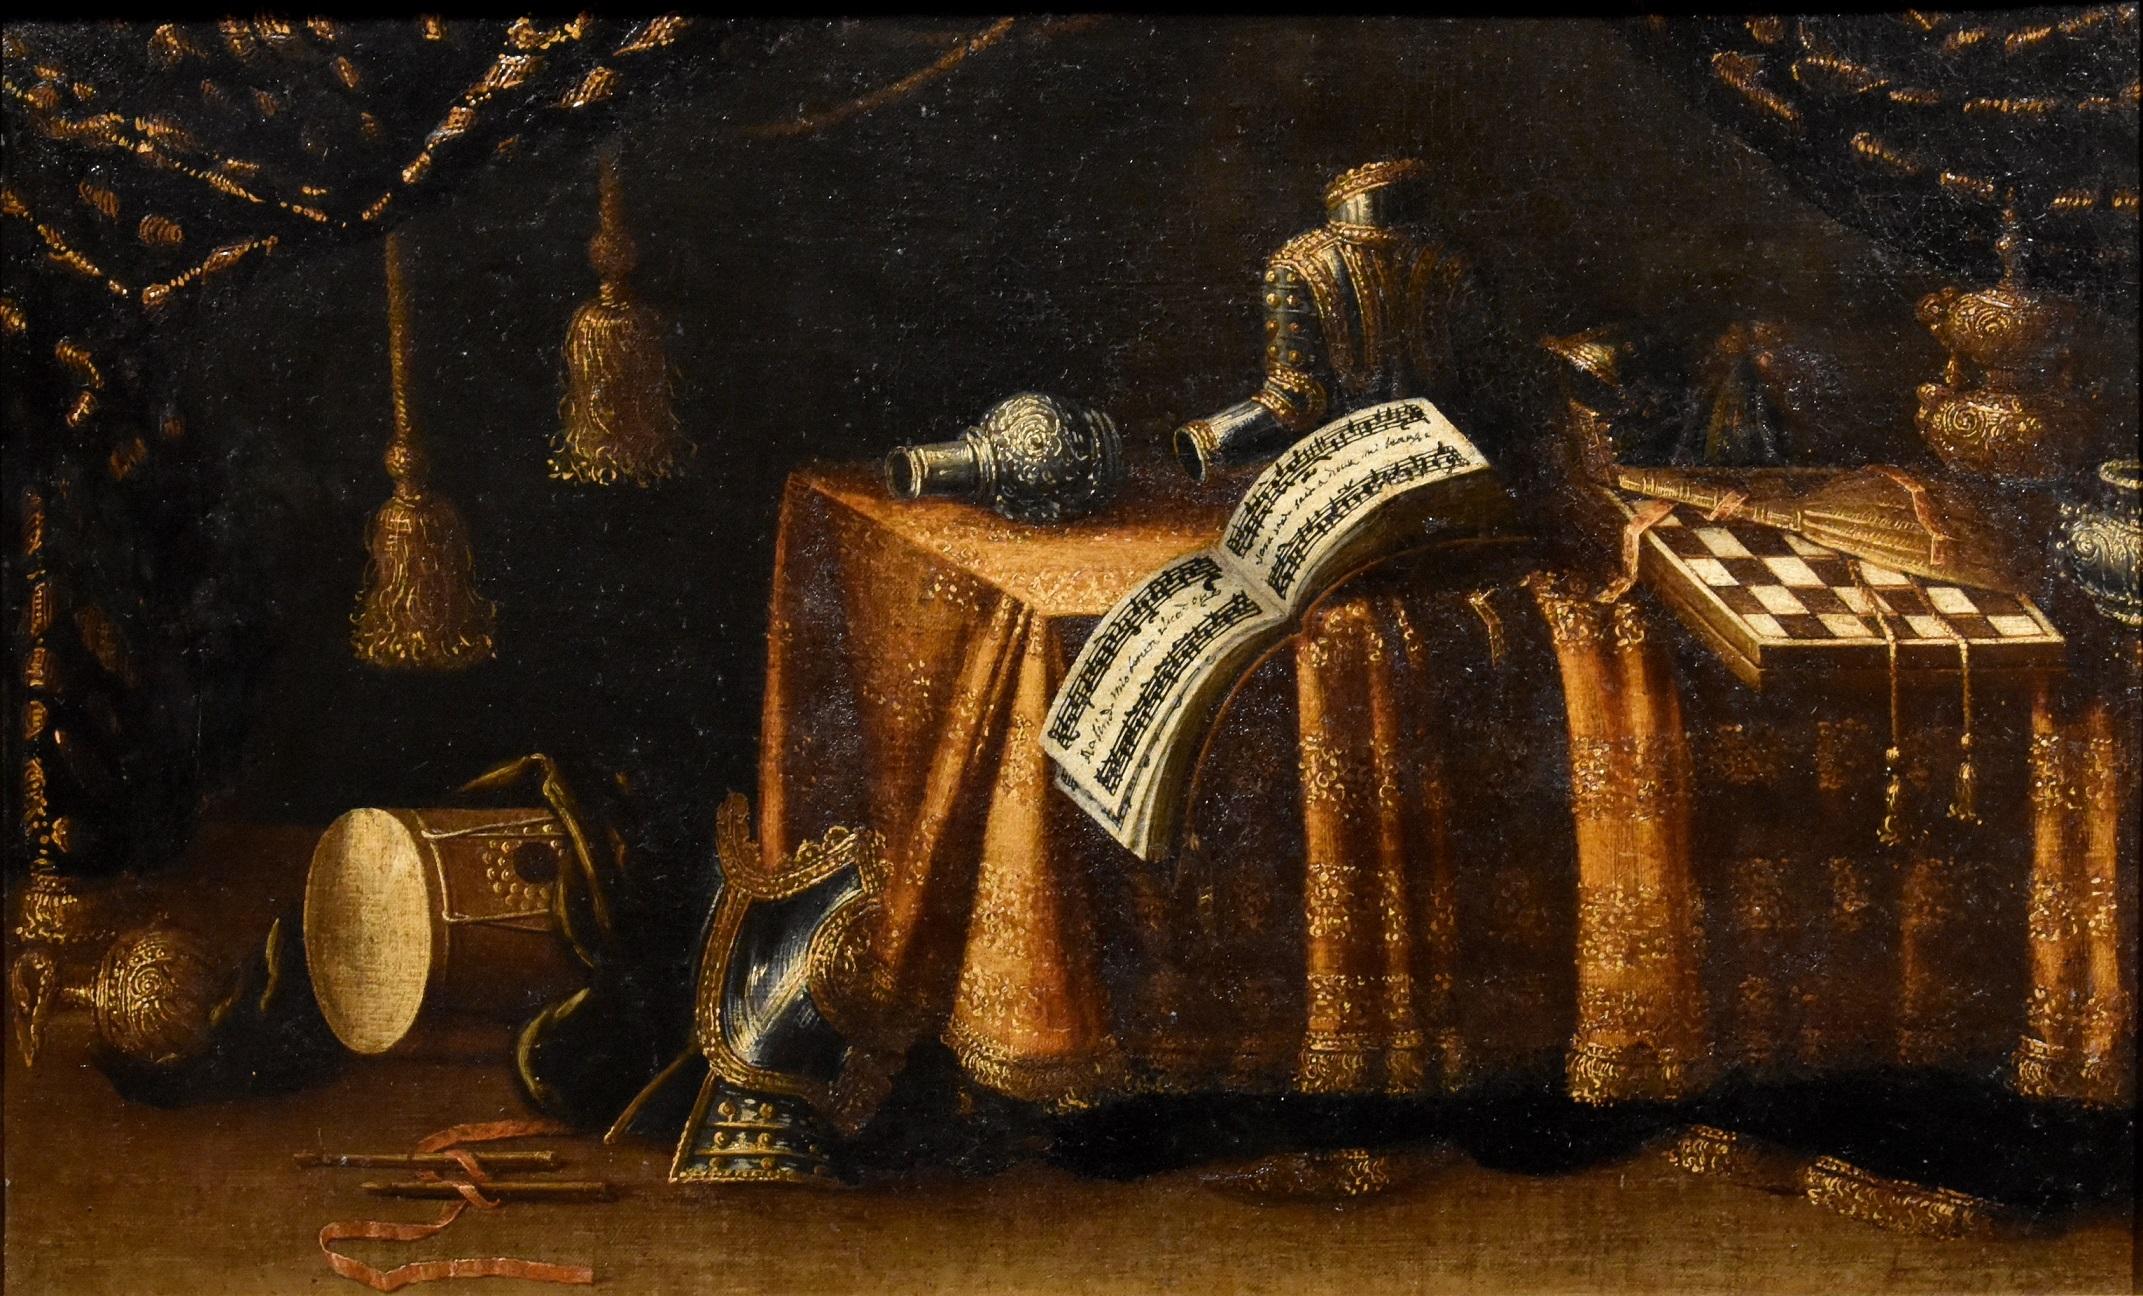 Stillleben von Vanitas Noletti, Ölgemälde auf Leinwand, Alter Meister, Italien, 17. Jahrhundert (Alte Meister), Painting, von Francesco Noletti known as the Maltese (Malta 1611-Rome 1654)